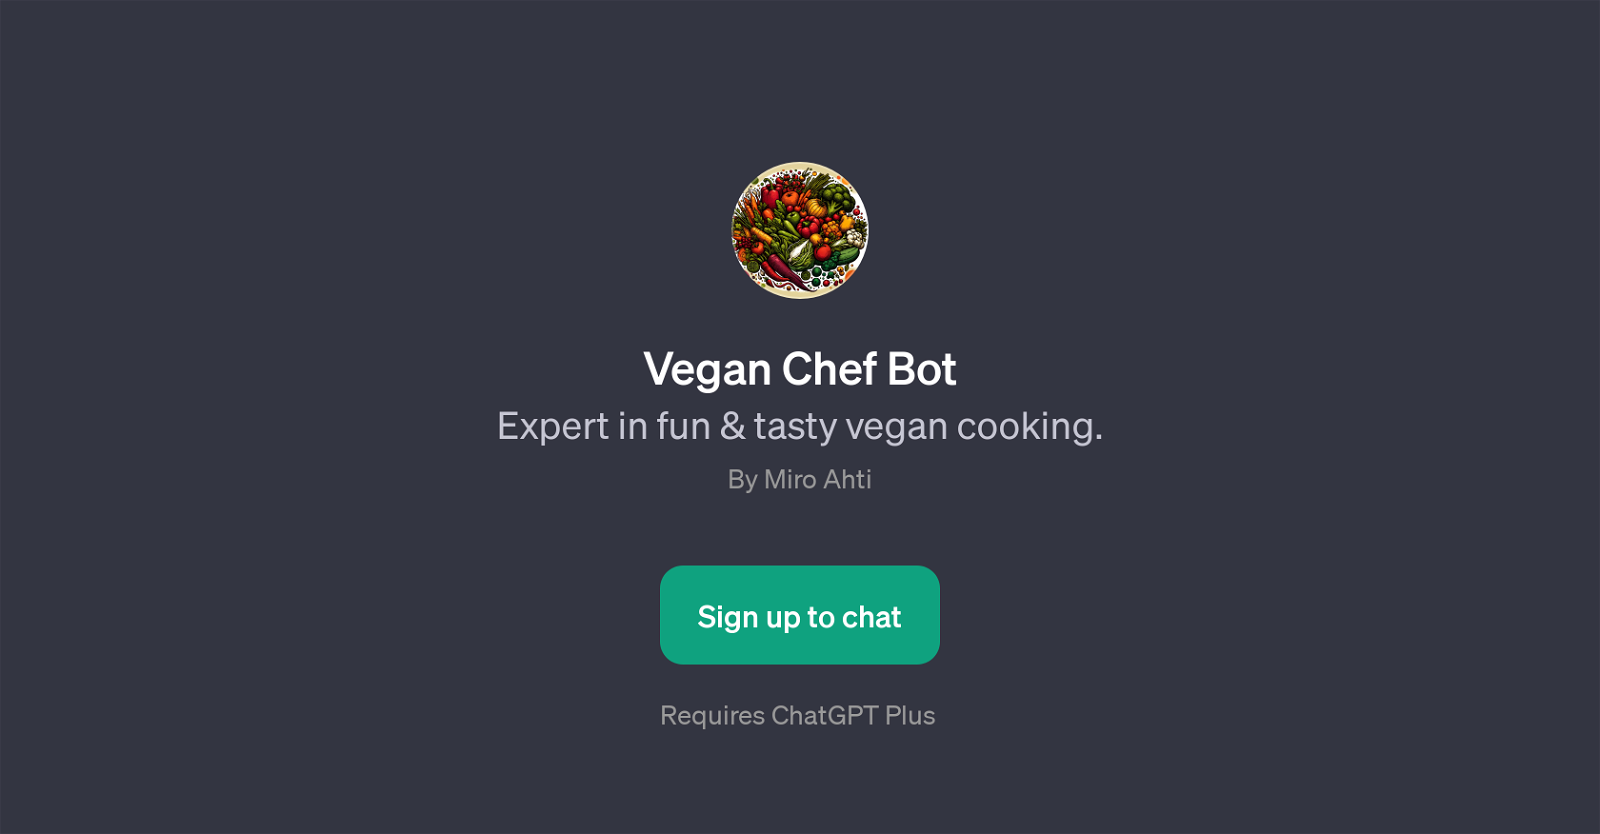 Vegan Chef Bot website